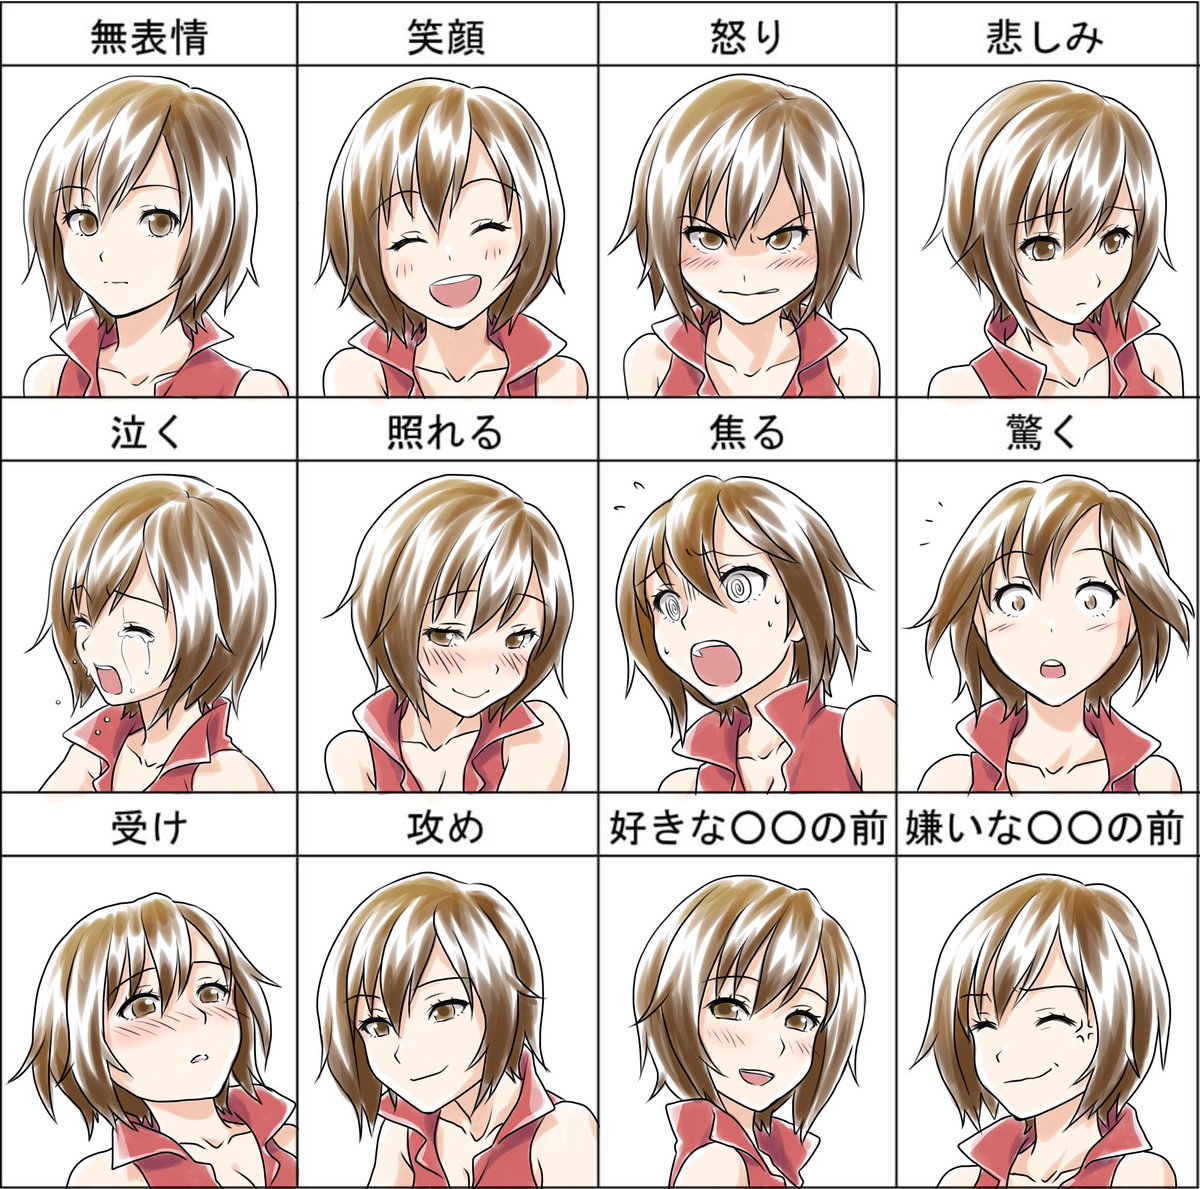 桐田アサミ Meikoで表情練習 こんないろんな表情描いたの初めてかもしれない どのmeikoさんがお好みでしょうか T Co Ro7udntfkj Twitter